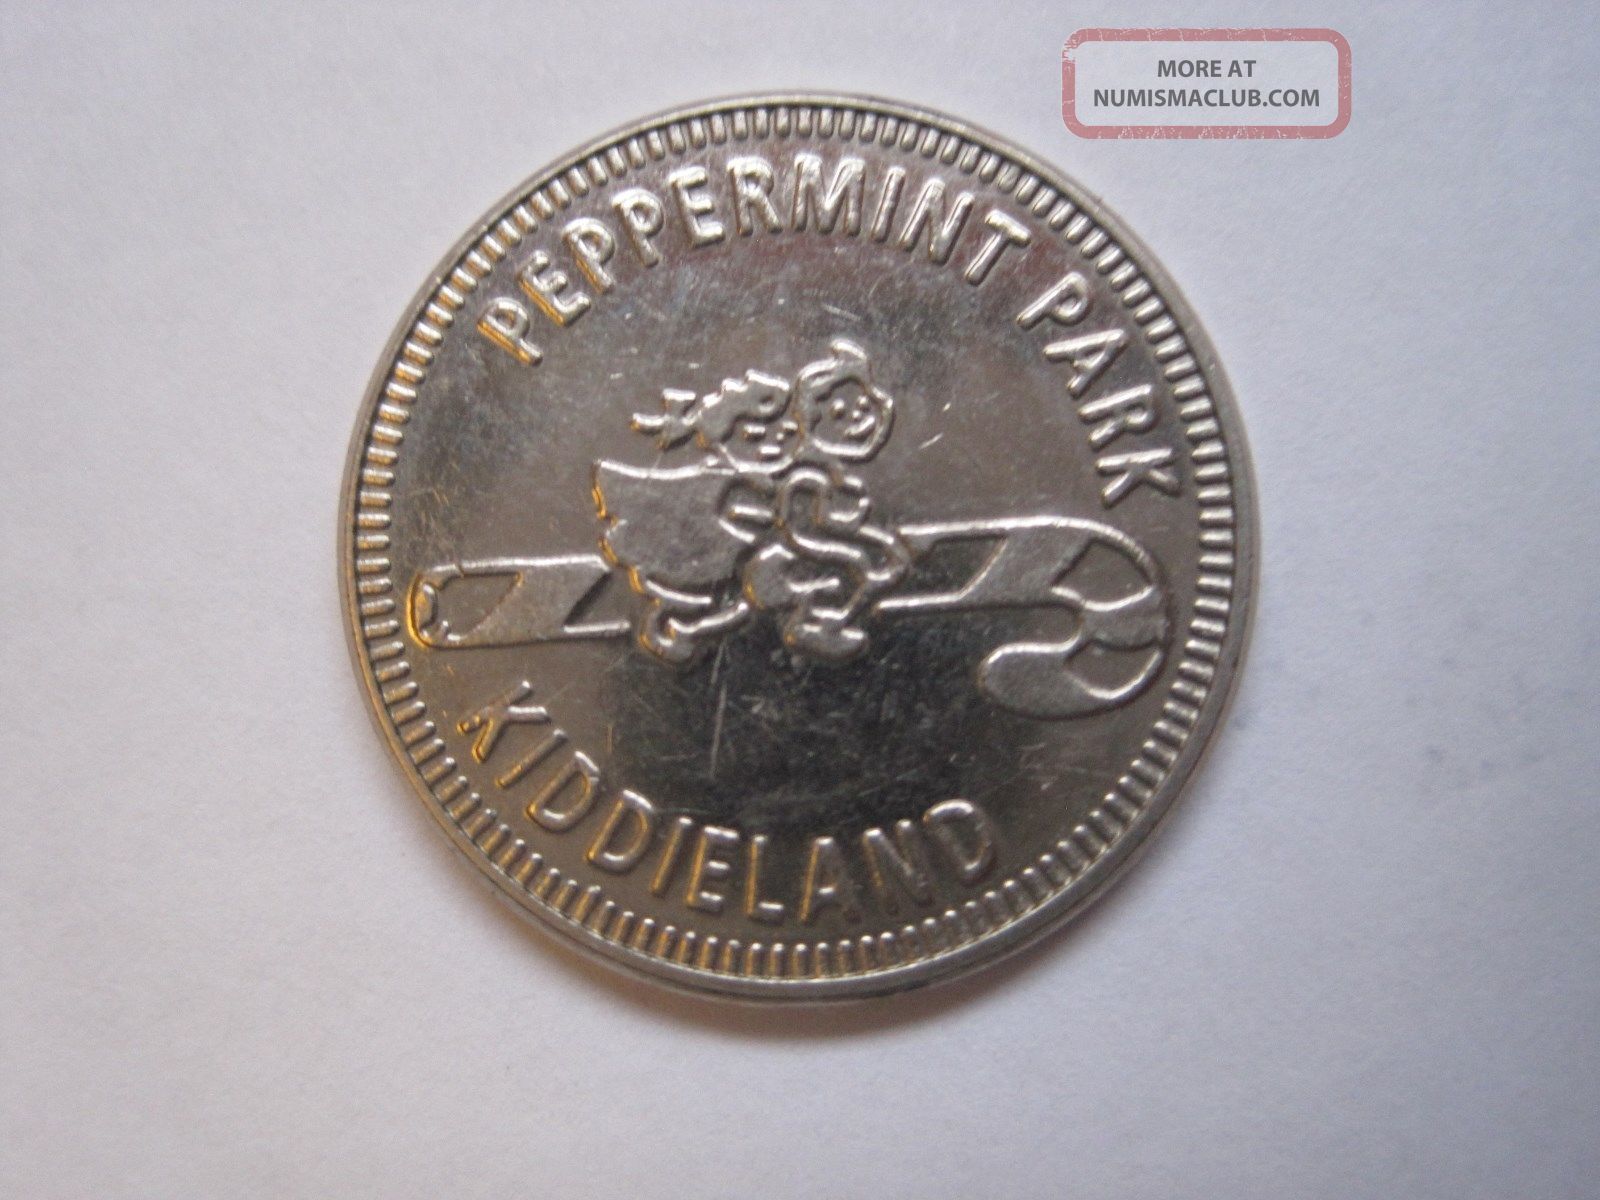 Peppermint Park Kiddieland Houston Texas (closed) Token Coin Exonumia photo